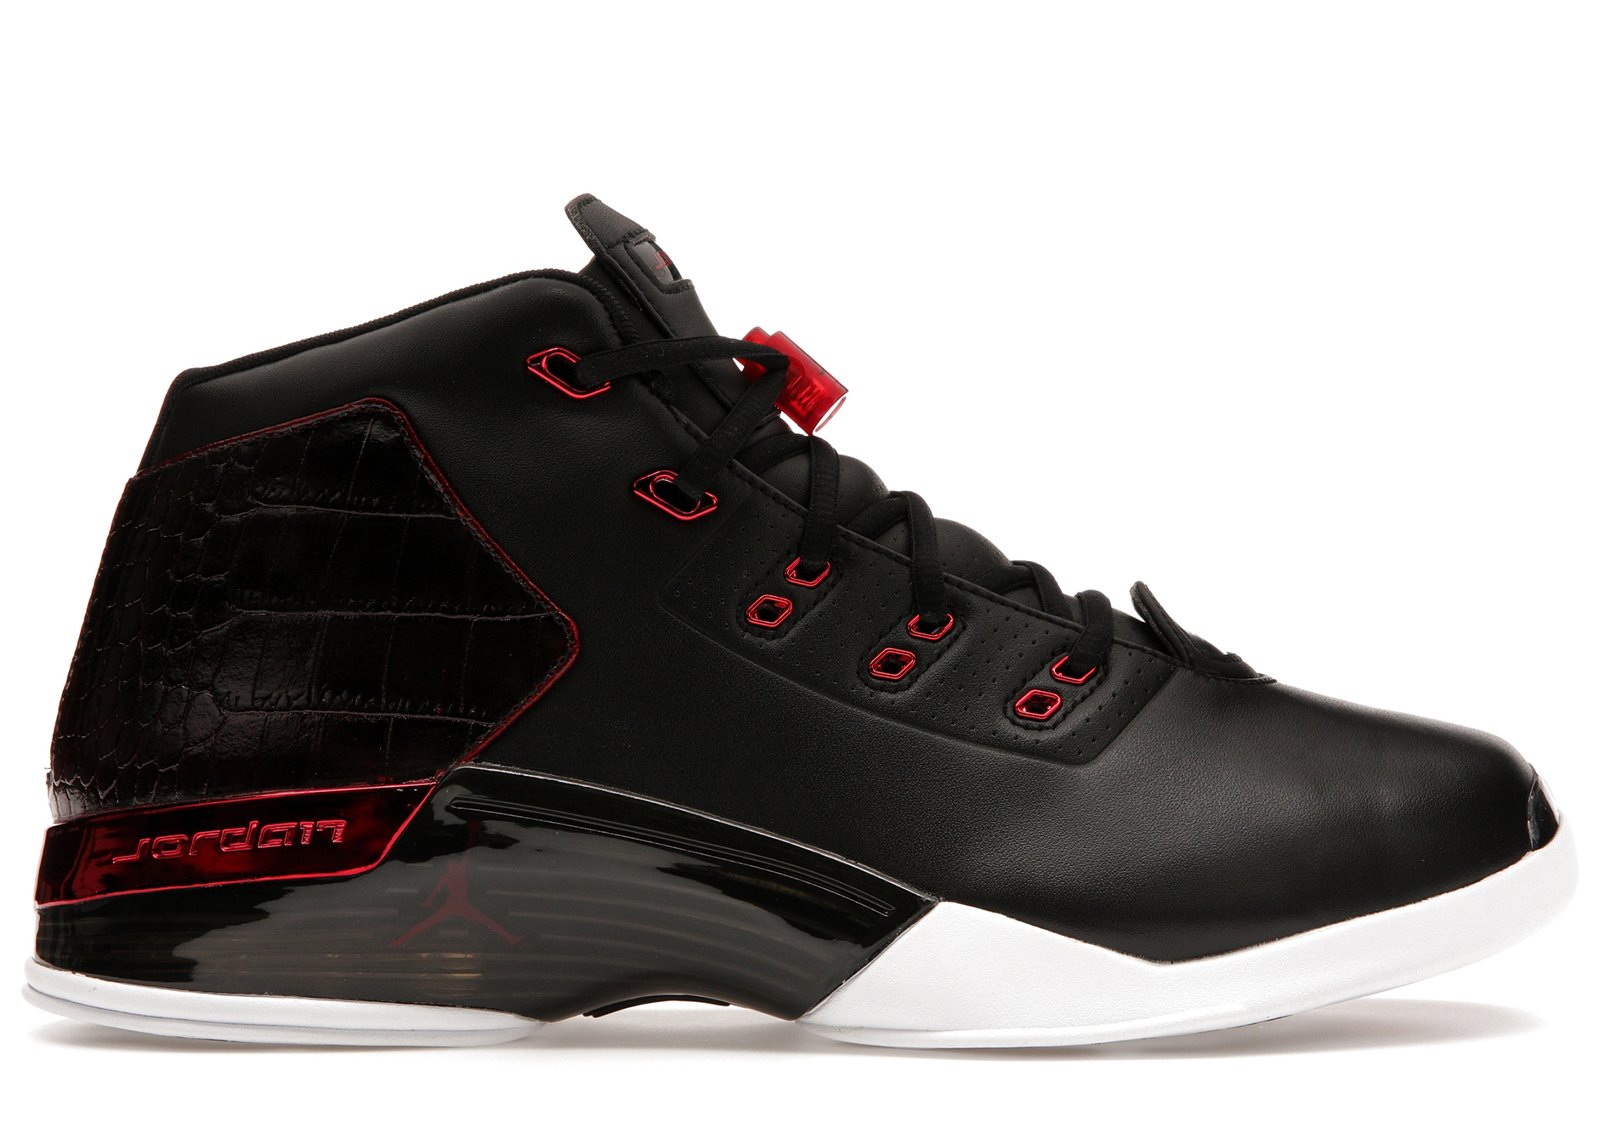 Jordan 17 Retro Chicago Bulls sneakers